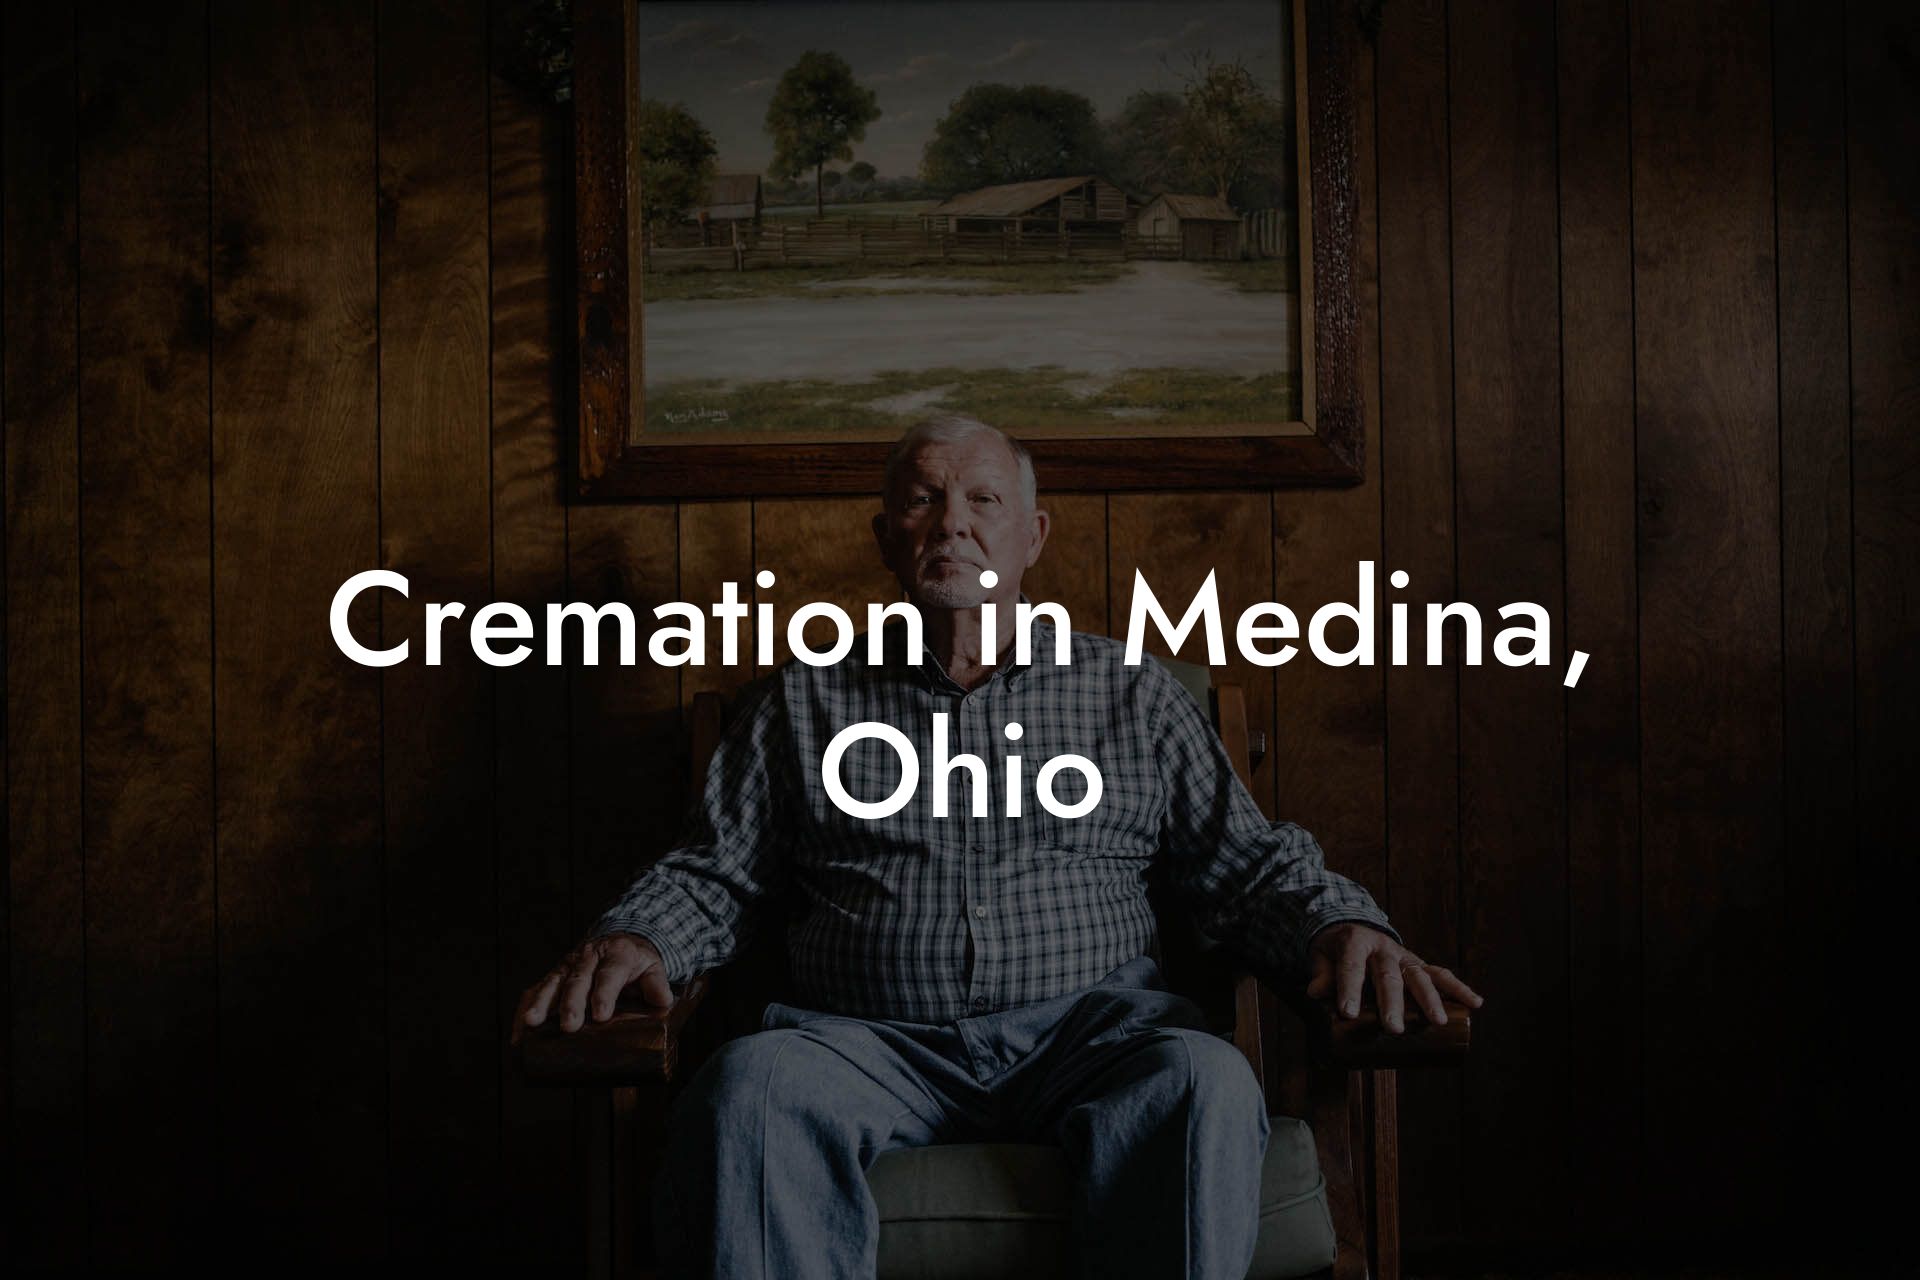 Cremation in Medina, Ohio